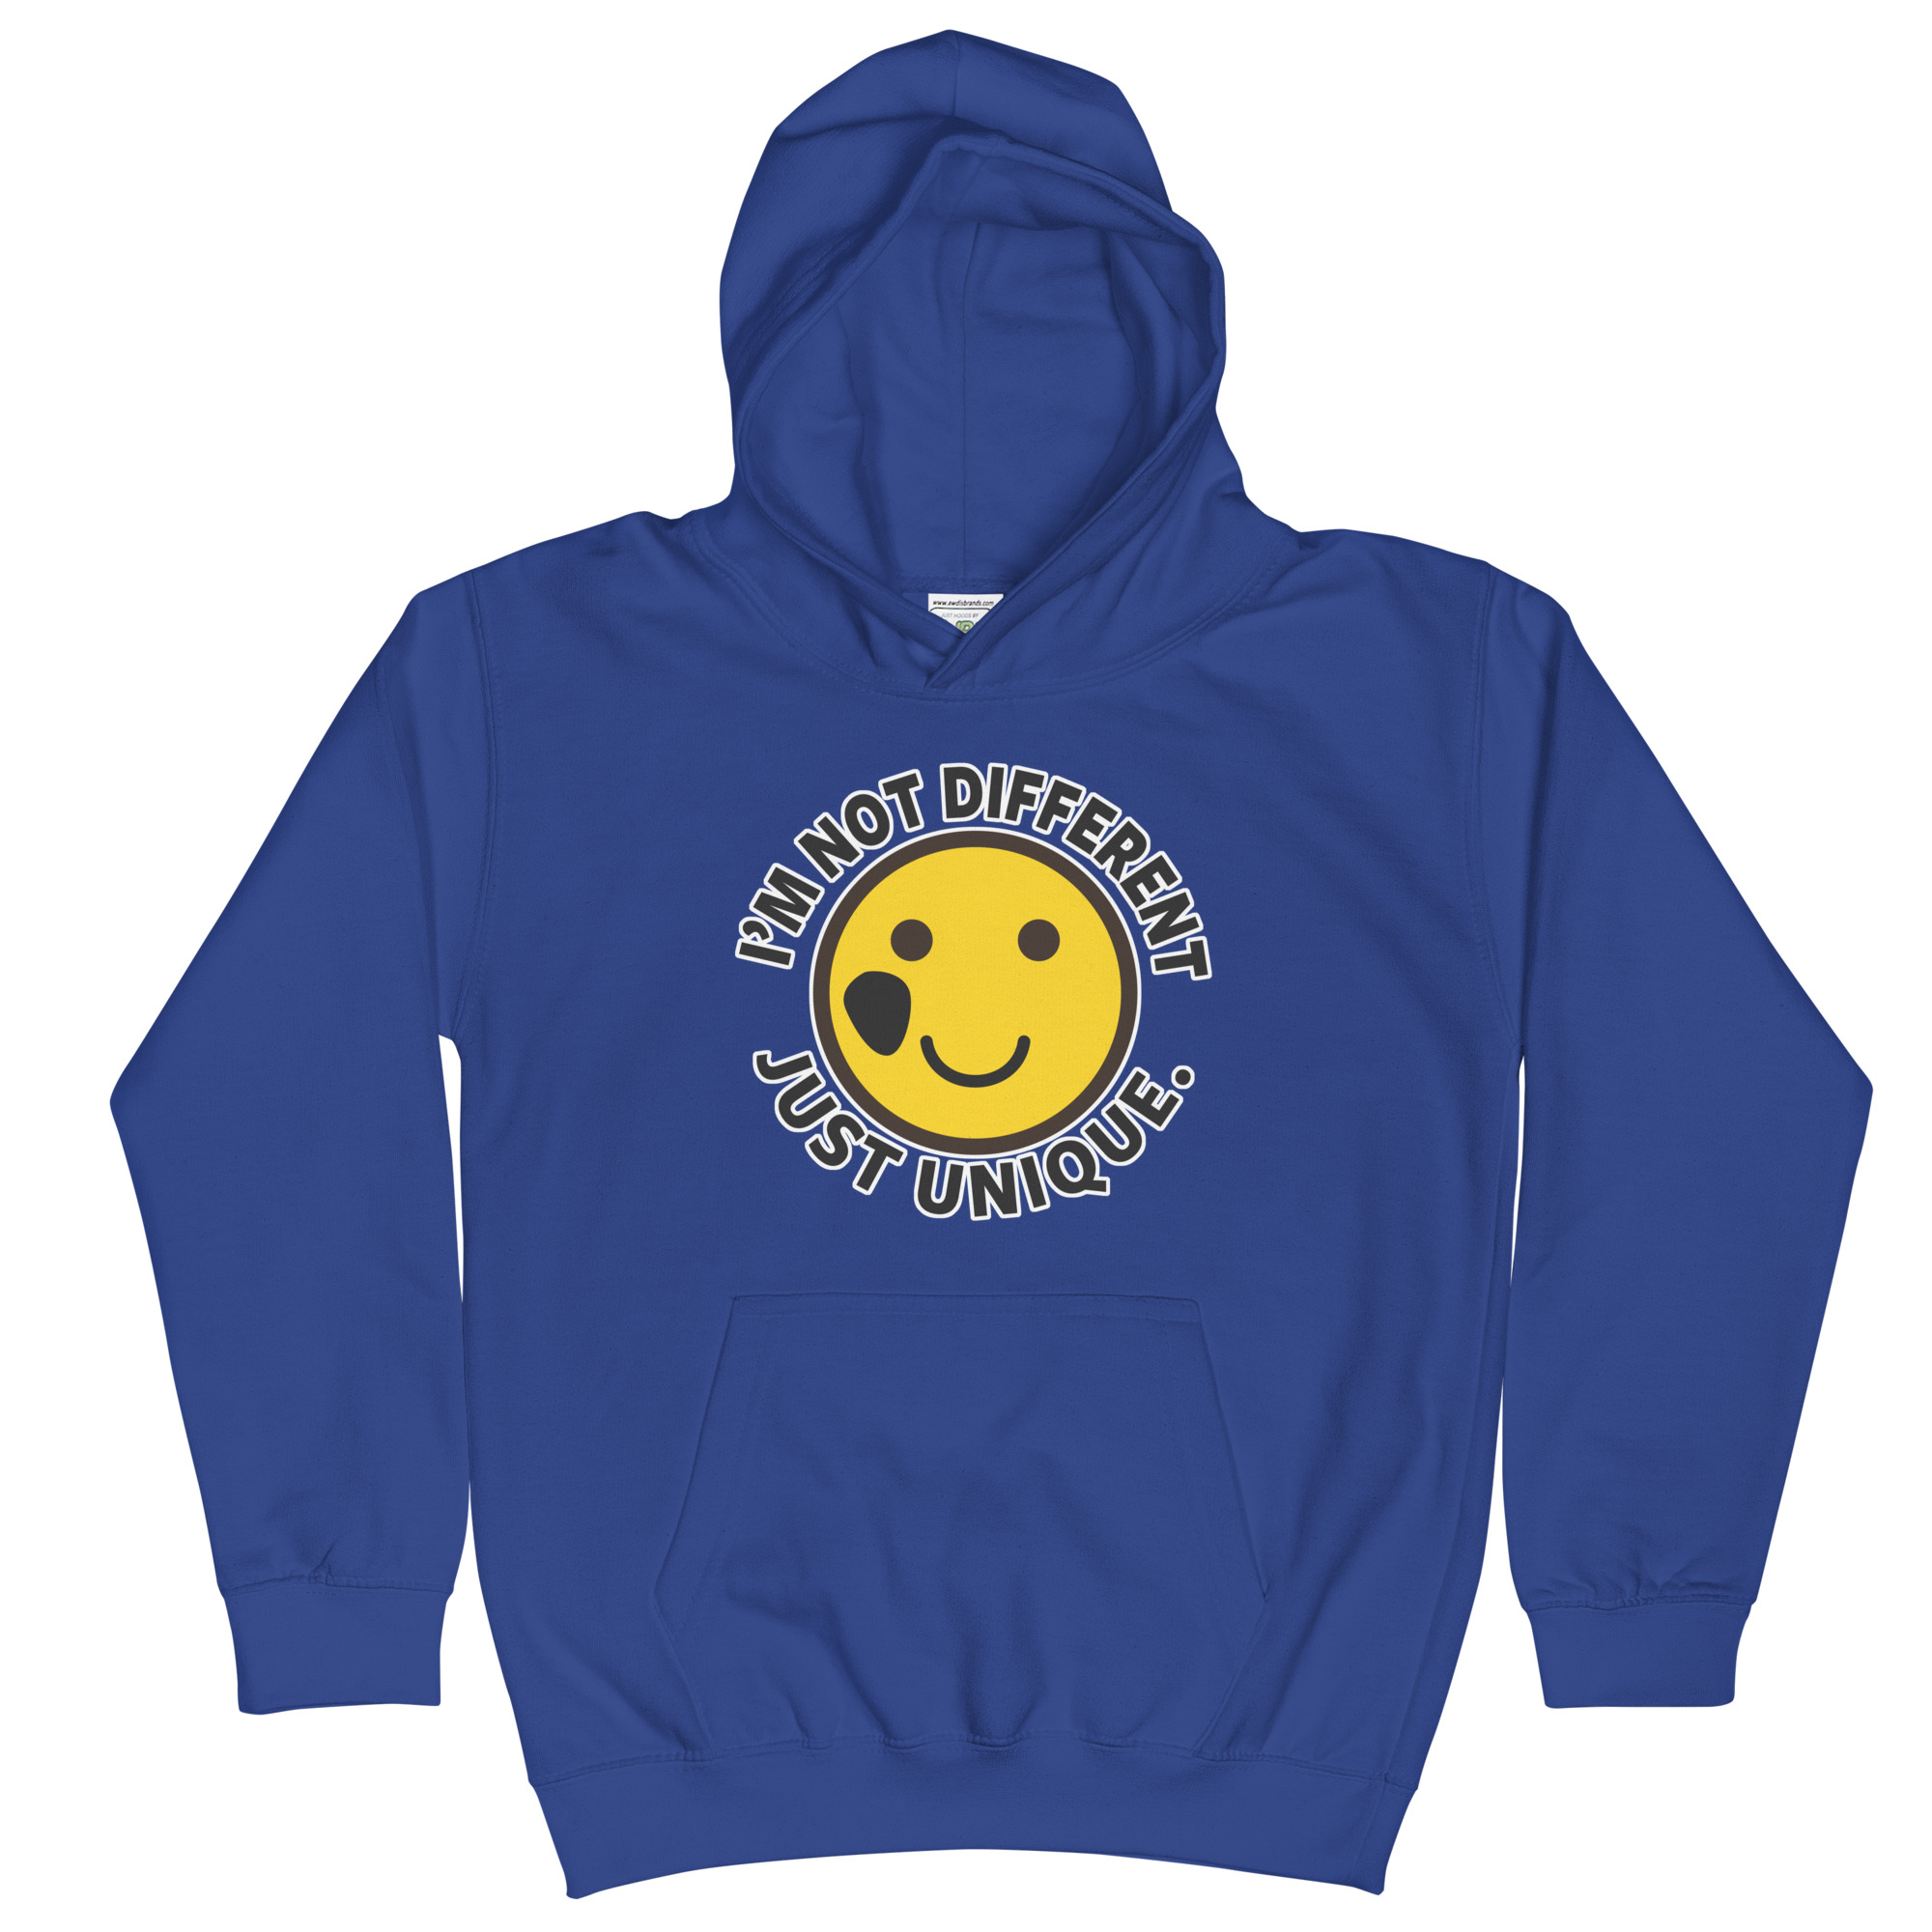 kids-hoodie-royal-blue-front-653942064fd68.jpg